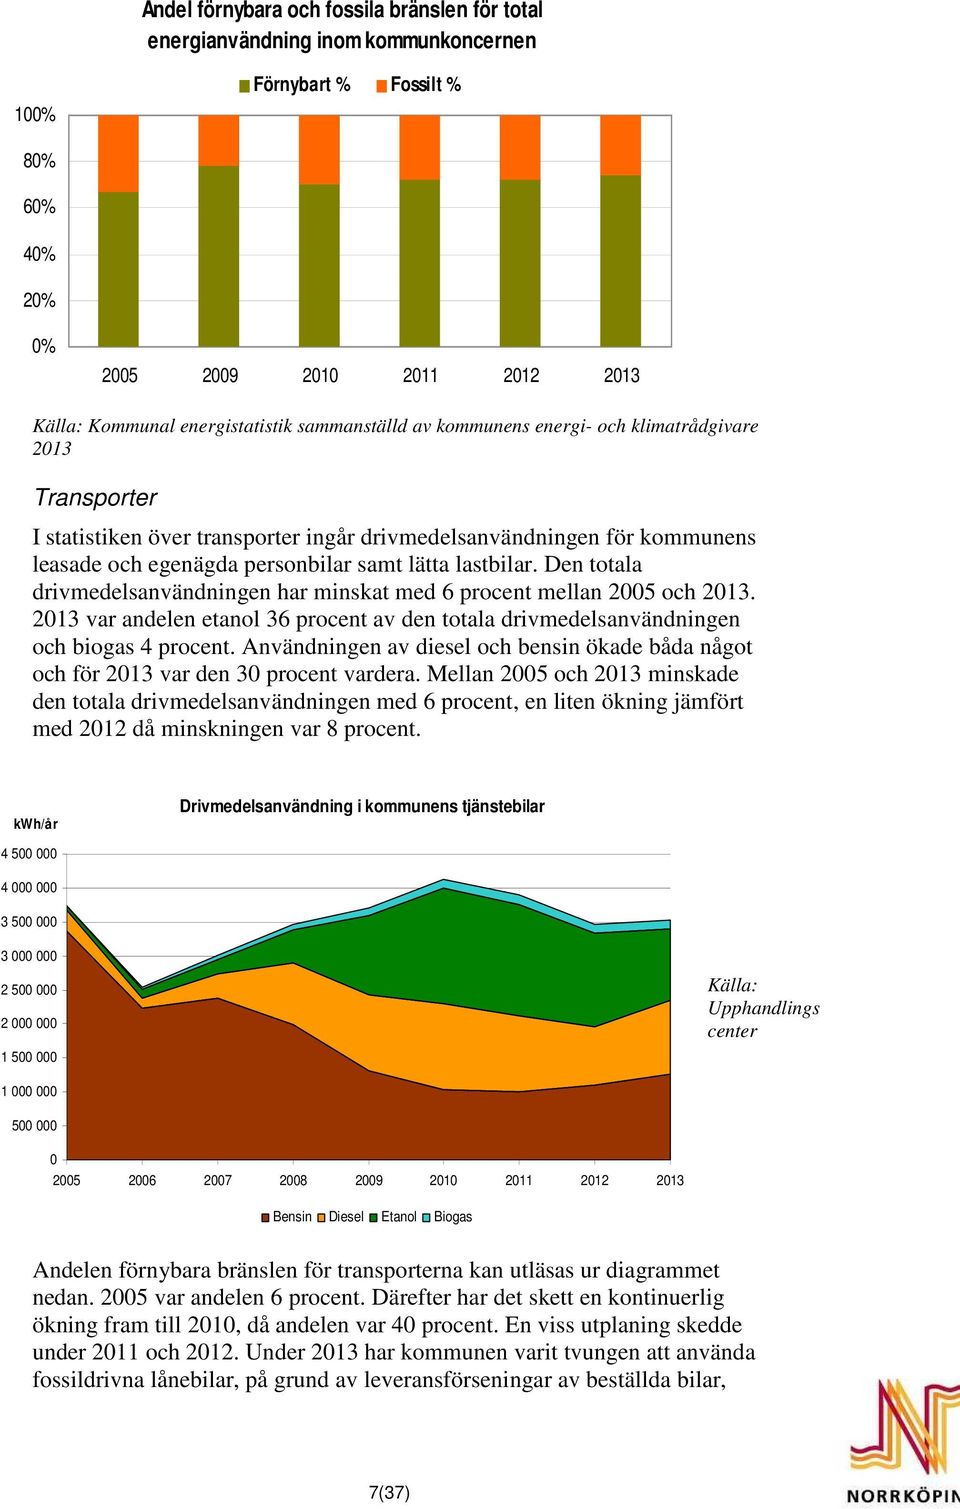 Den totala drivmedelsanvändningen har minskat med 6 procent mellan 2005 och 2013. 2013 var andelen etanol 36 procent av den totala drivmedelsanvändningen och biogas 4 procent.